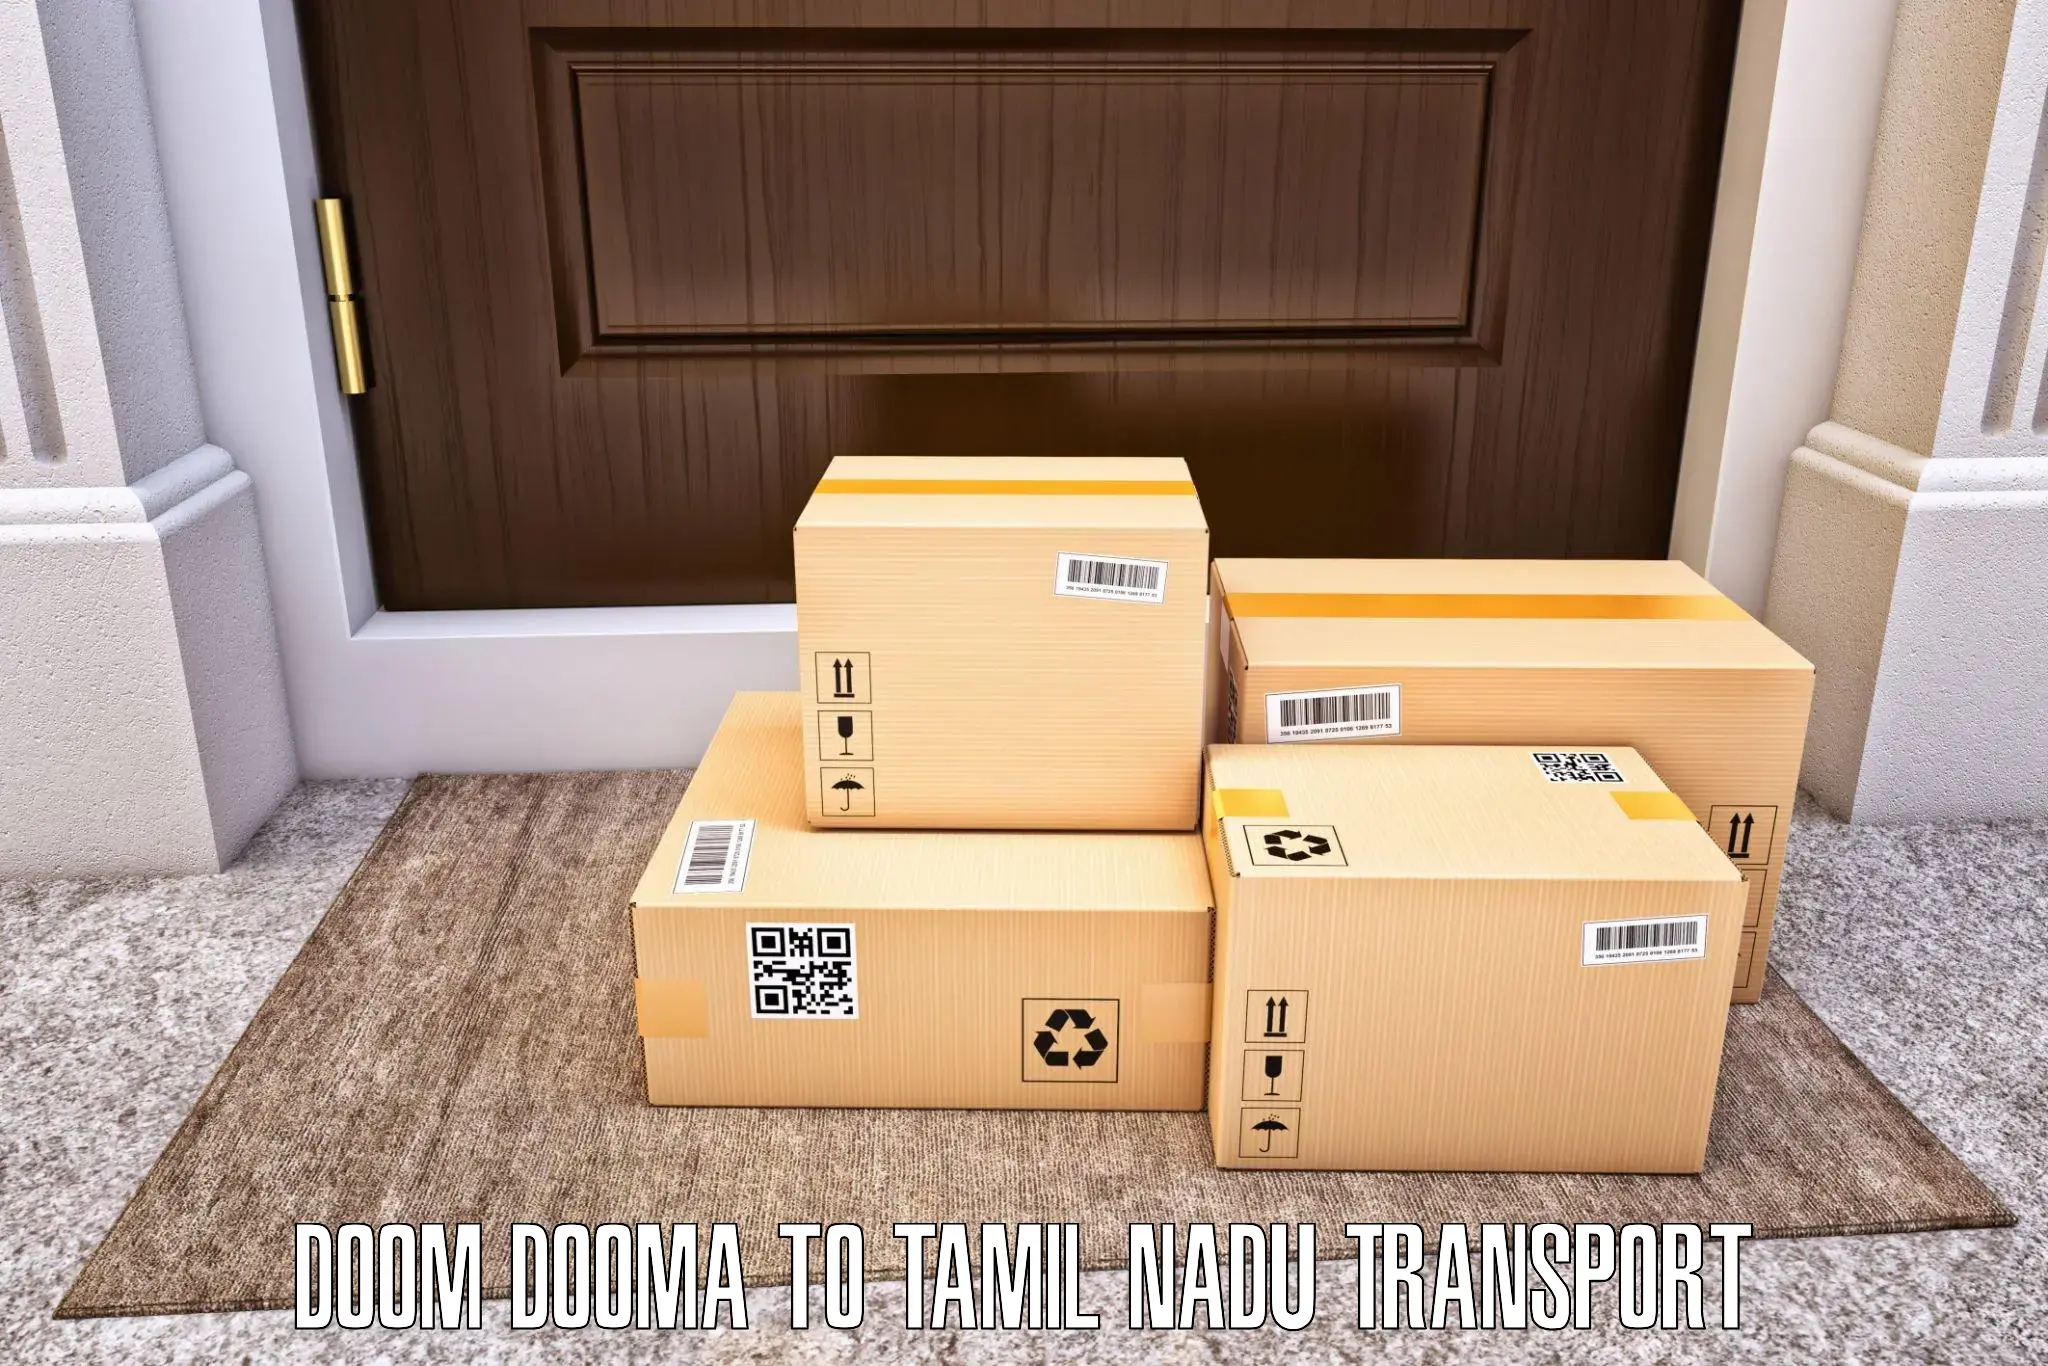 Furniture transport service Doom Dooma to Mylapore